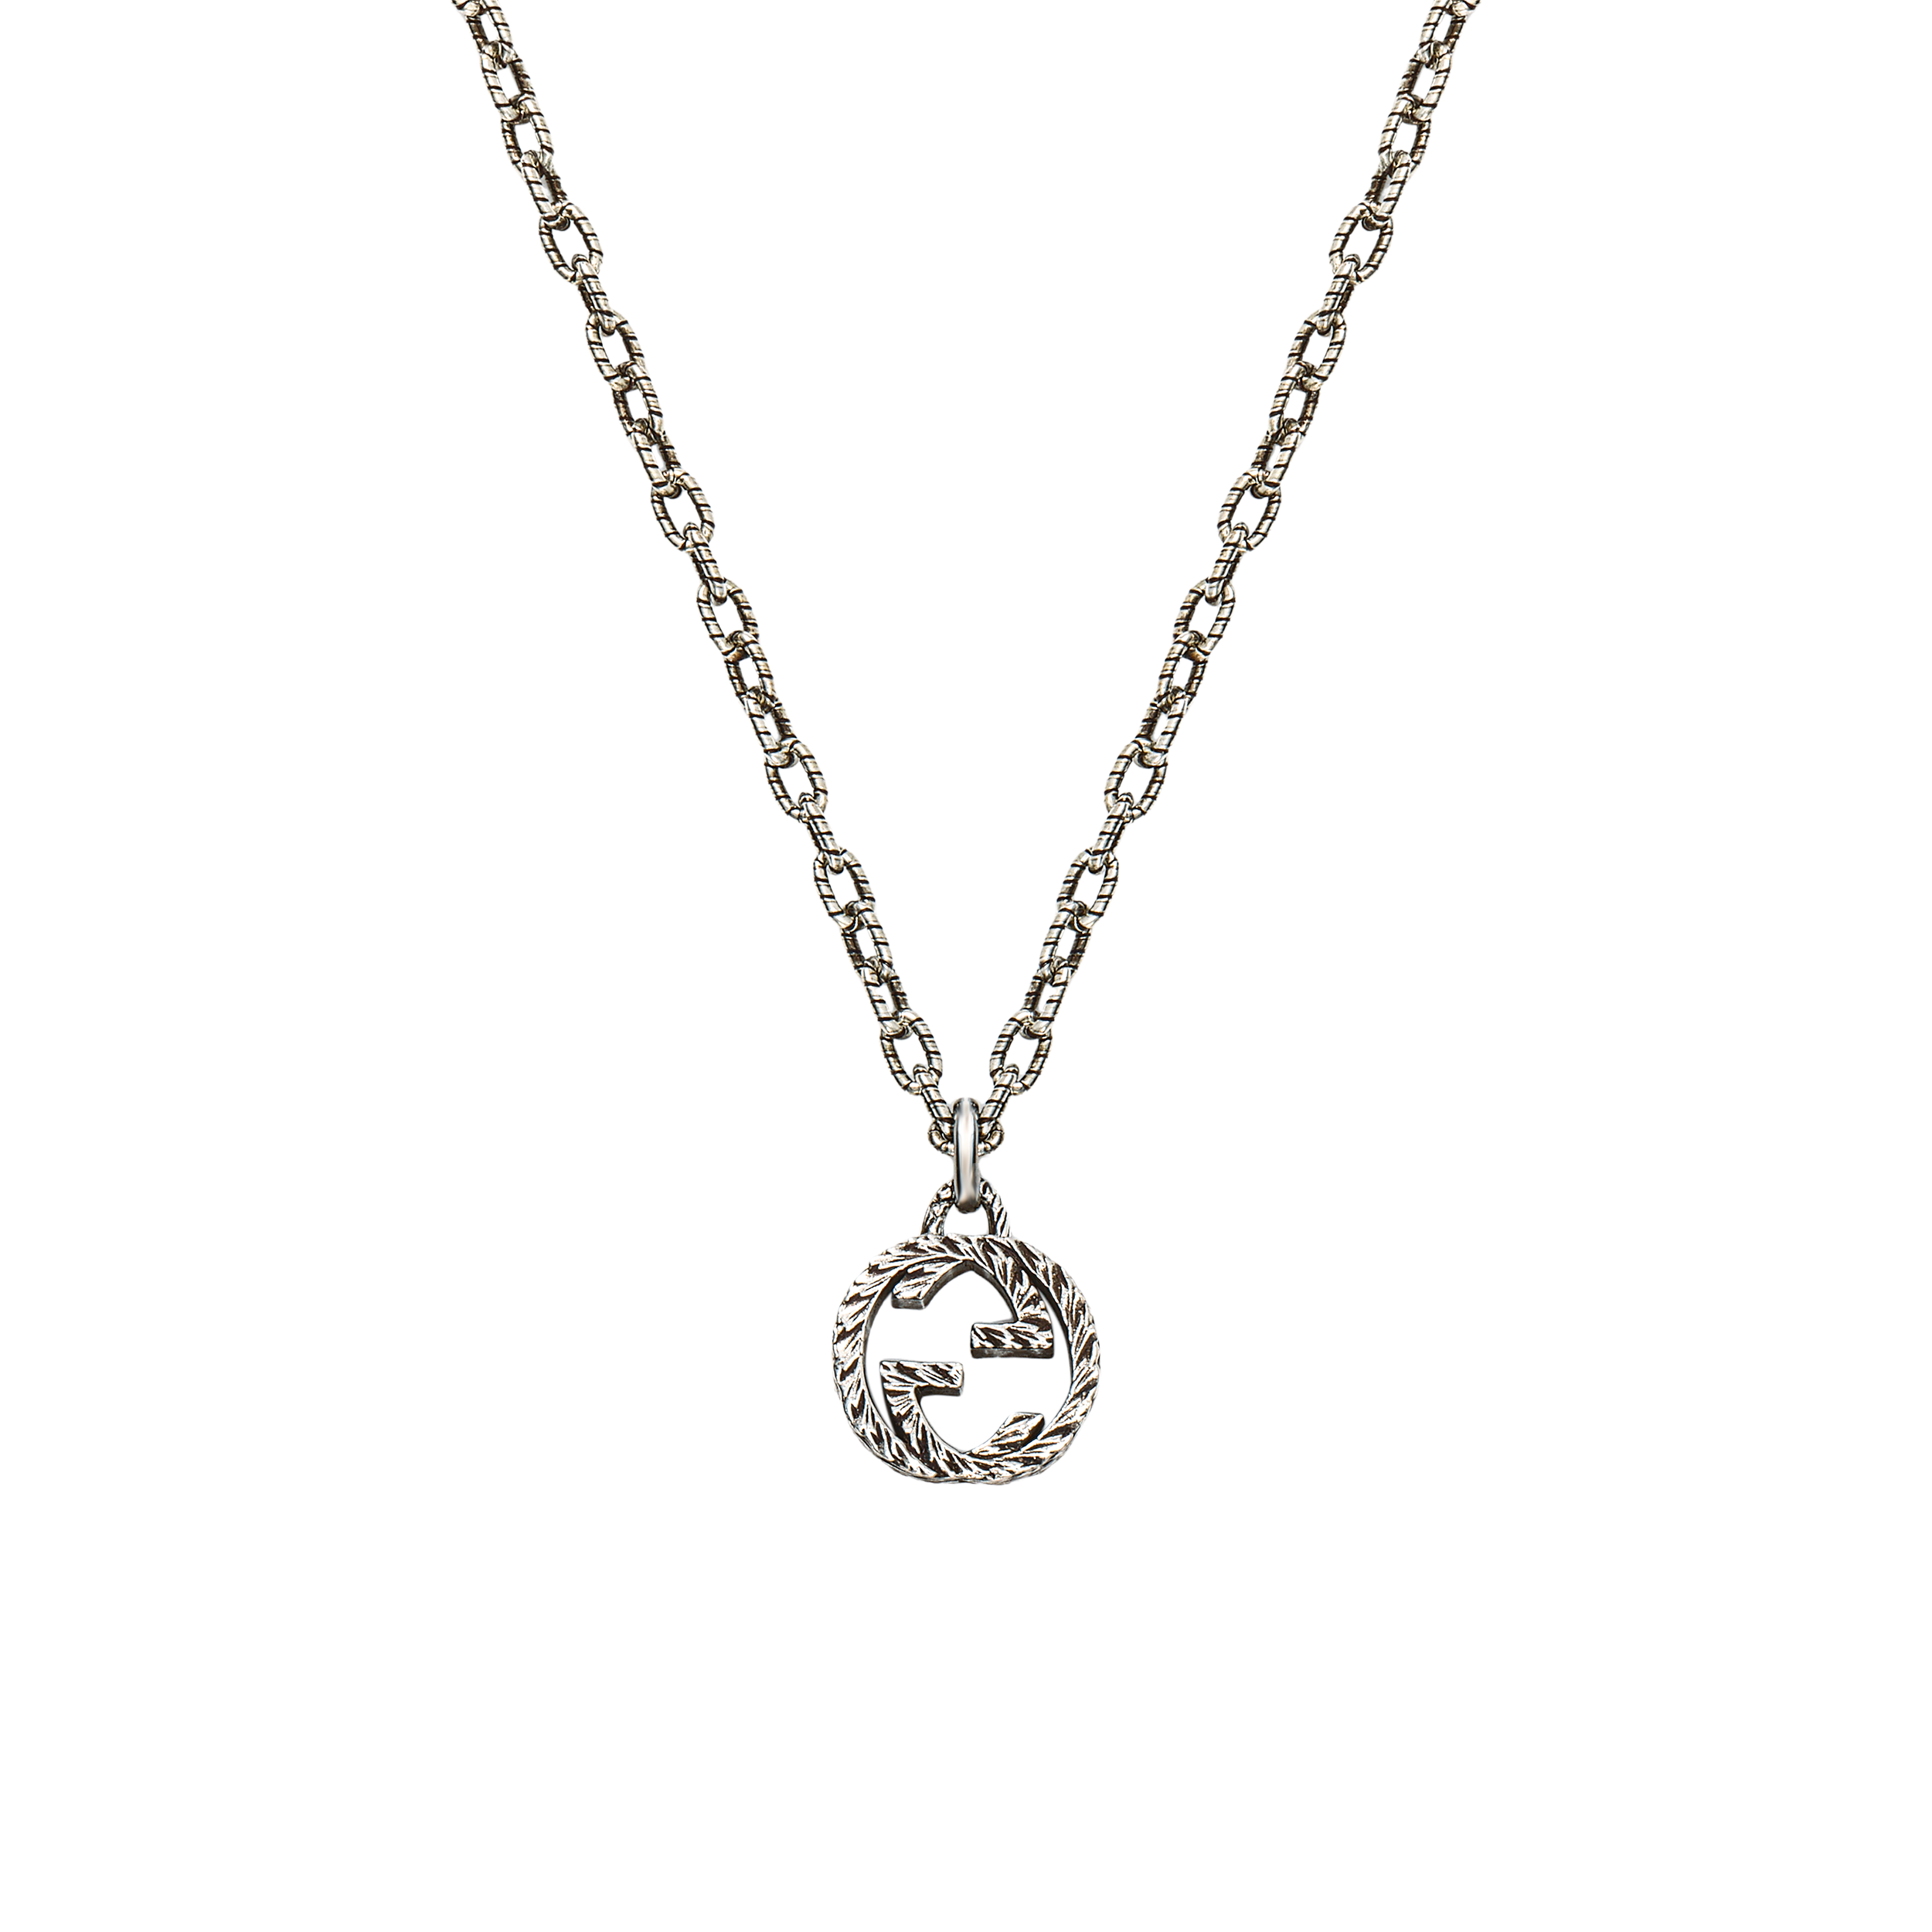 Gucci Interlocking G Necklace in Silver YBB47921900100U | Goldsmiths